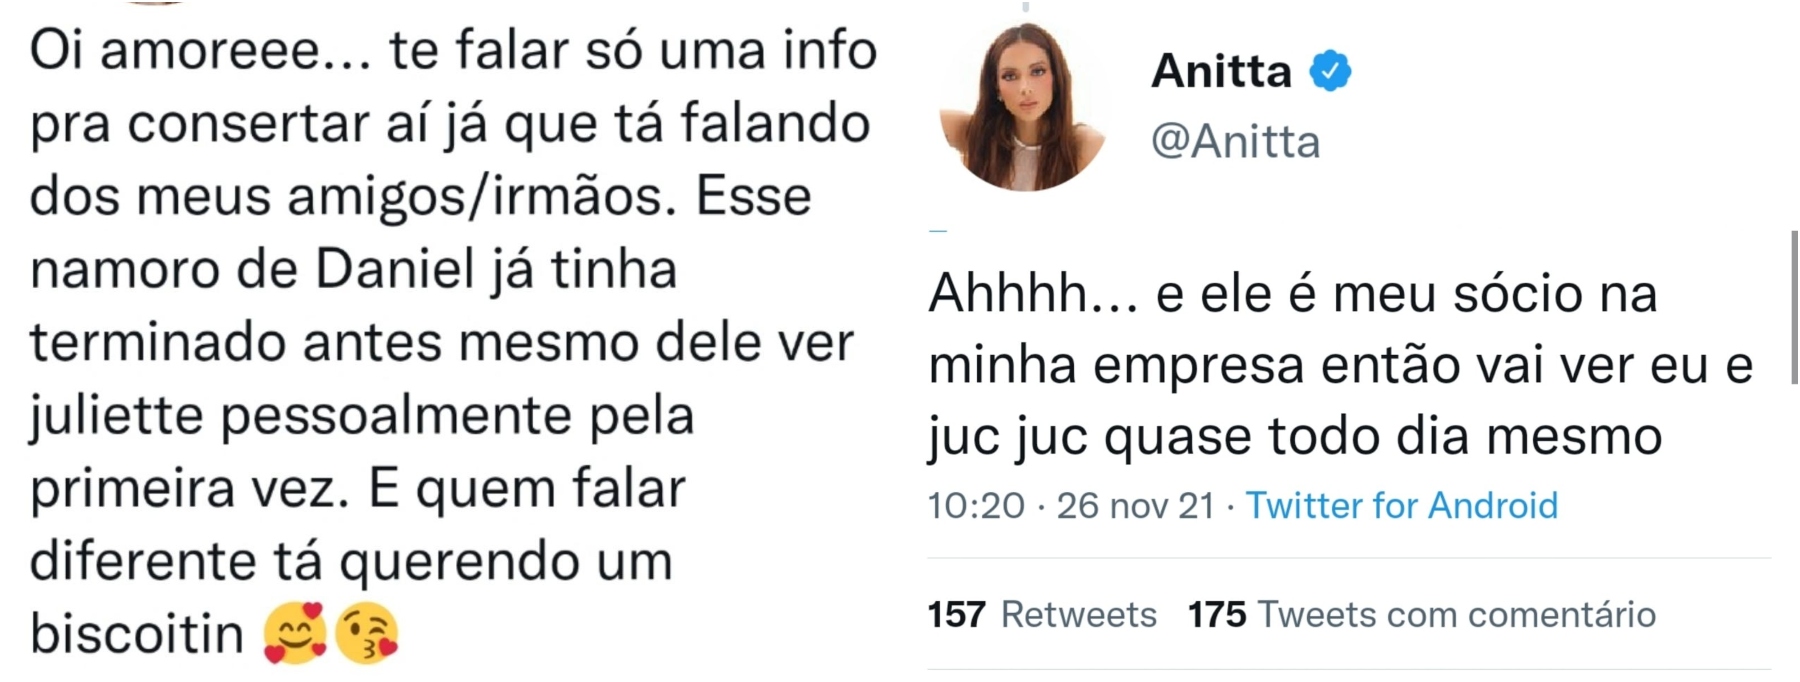 Anitta esclarece rumores sobre relação de seu sócio com Juliette - Foto: Reprodução/Twitter